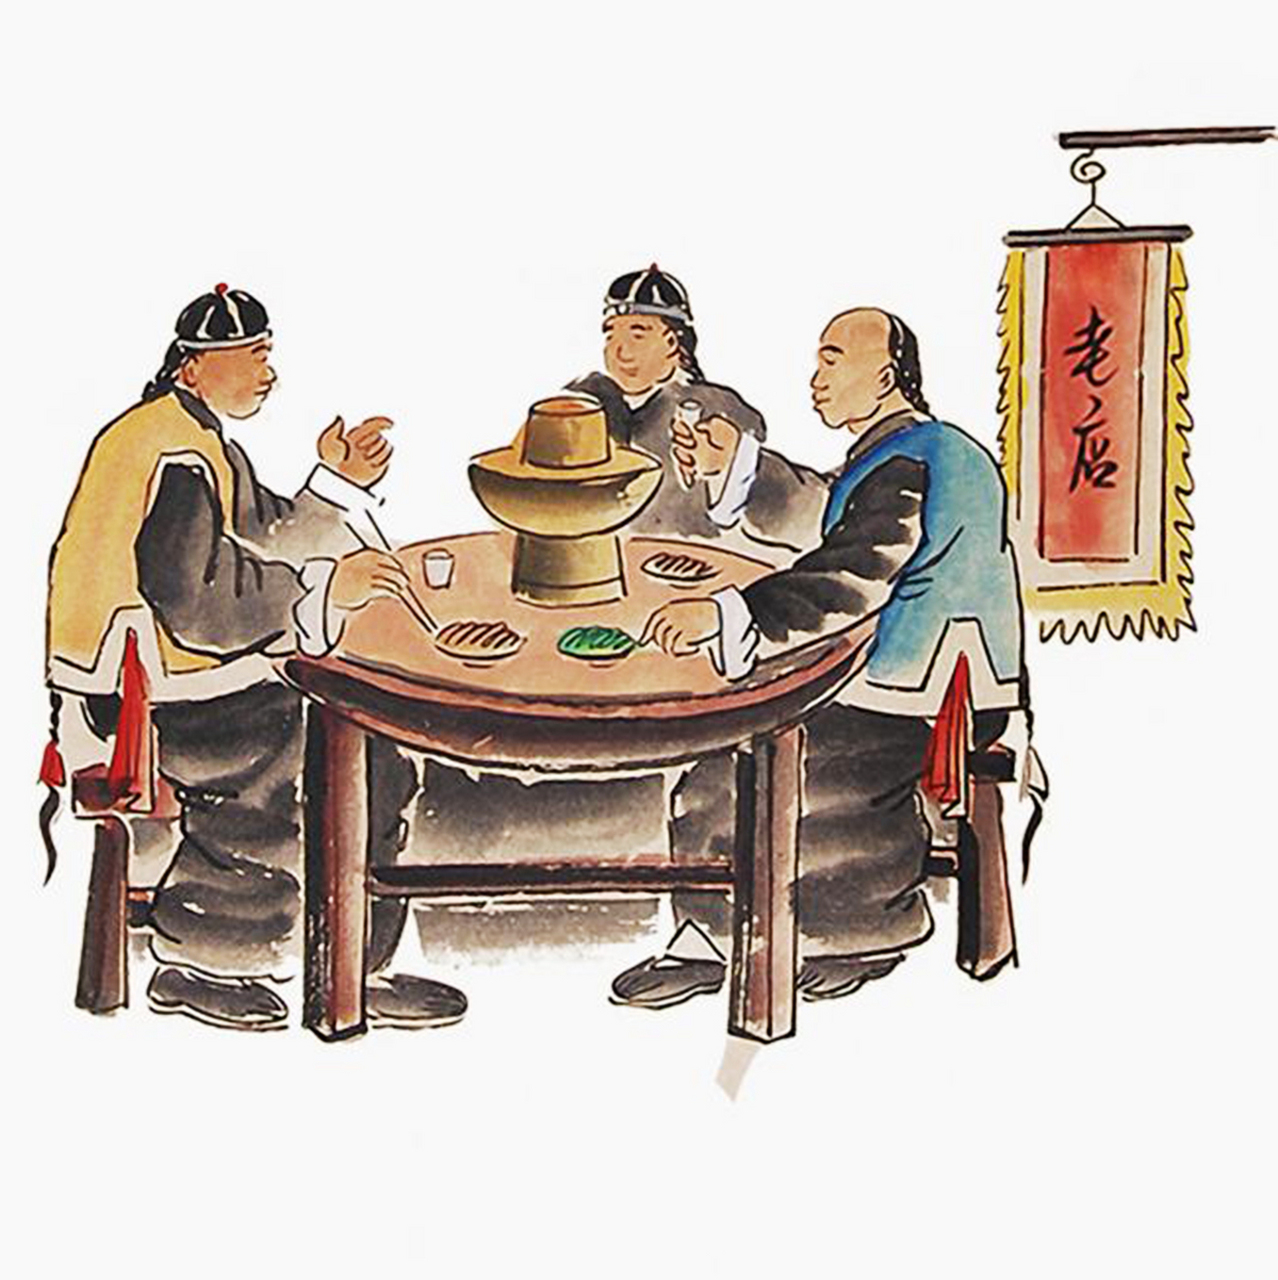 古代笑话一则:几个人坐在一张桌子上,一边吃饭,一边喝着酒